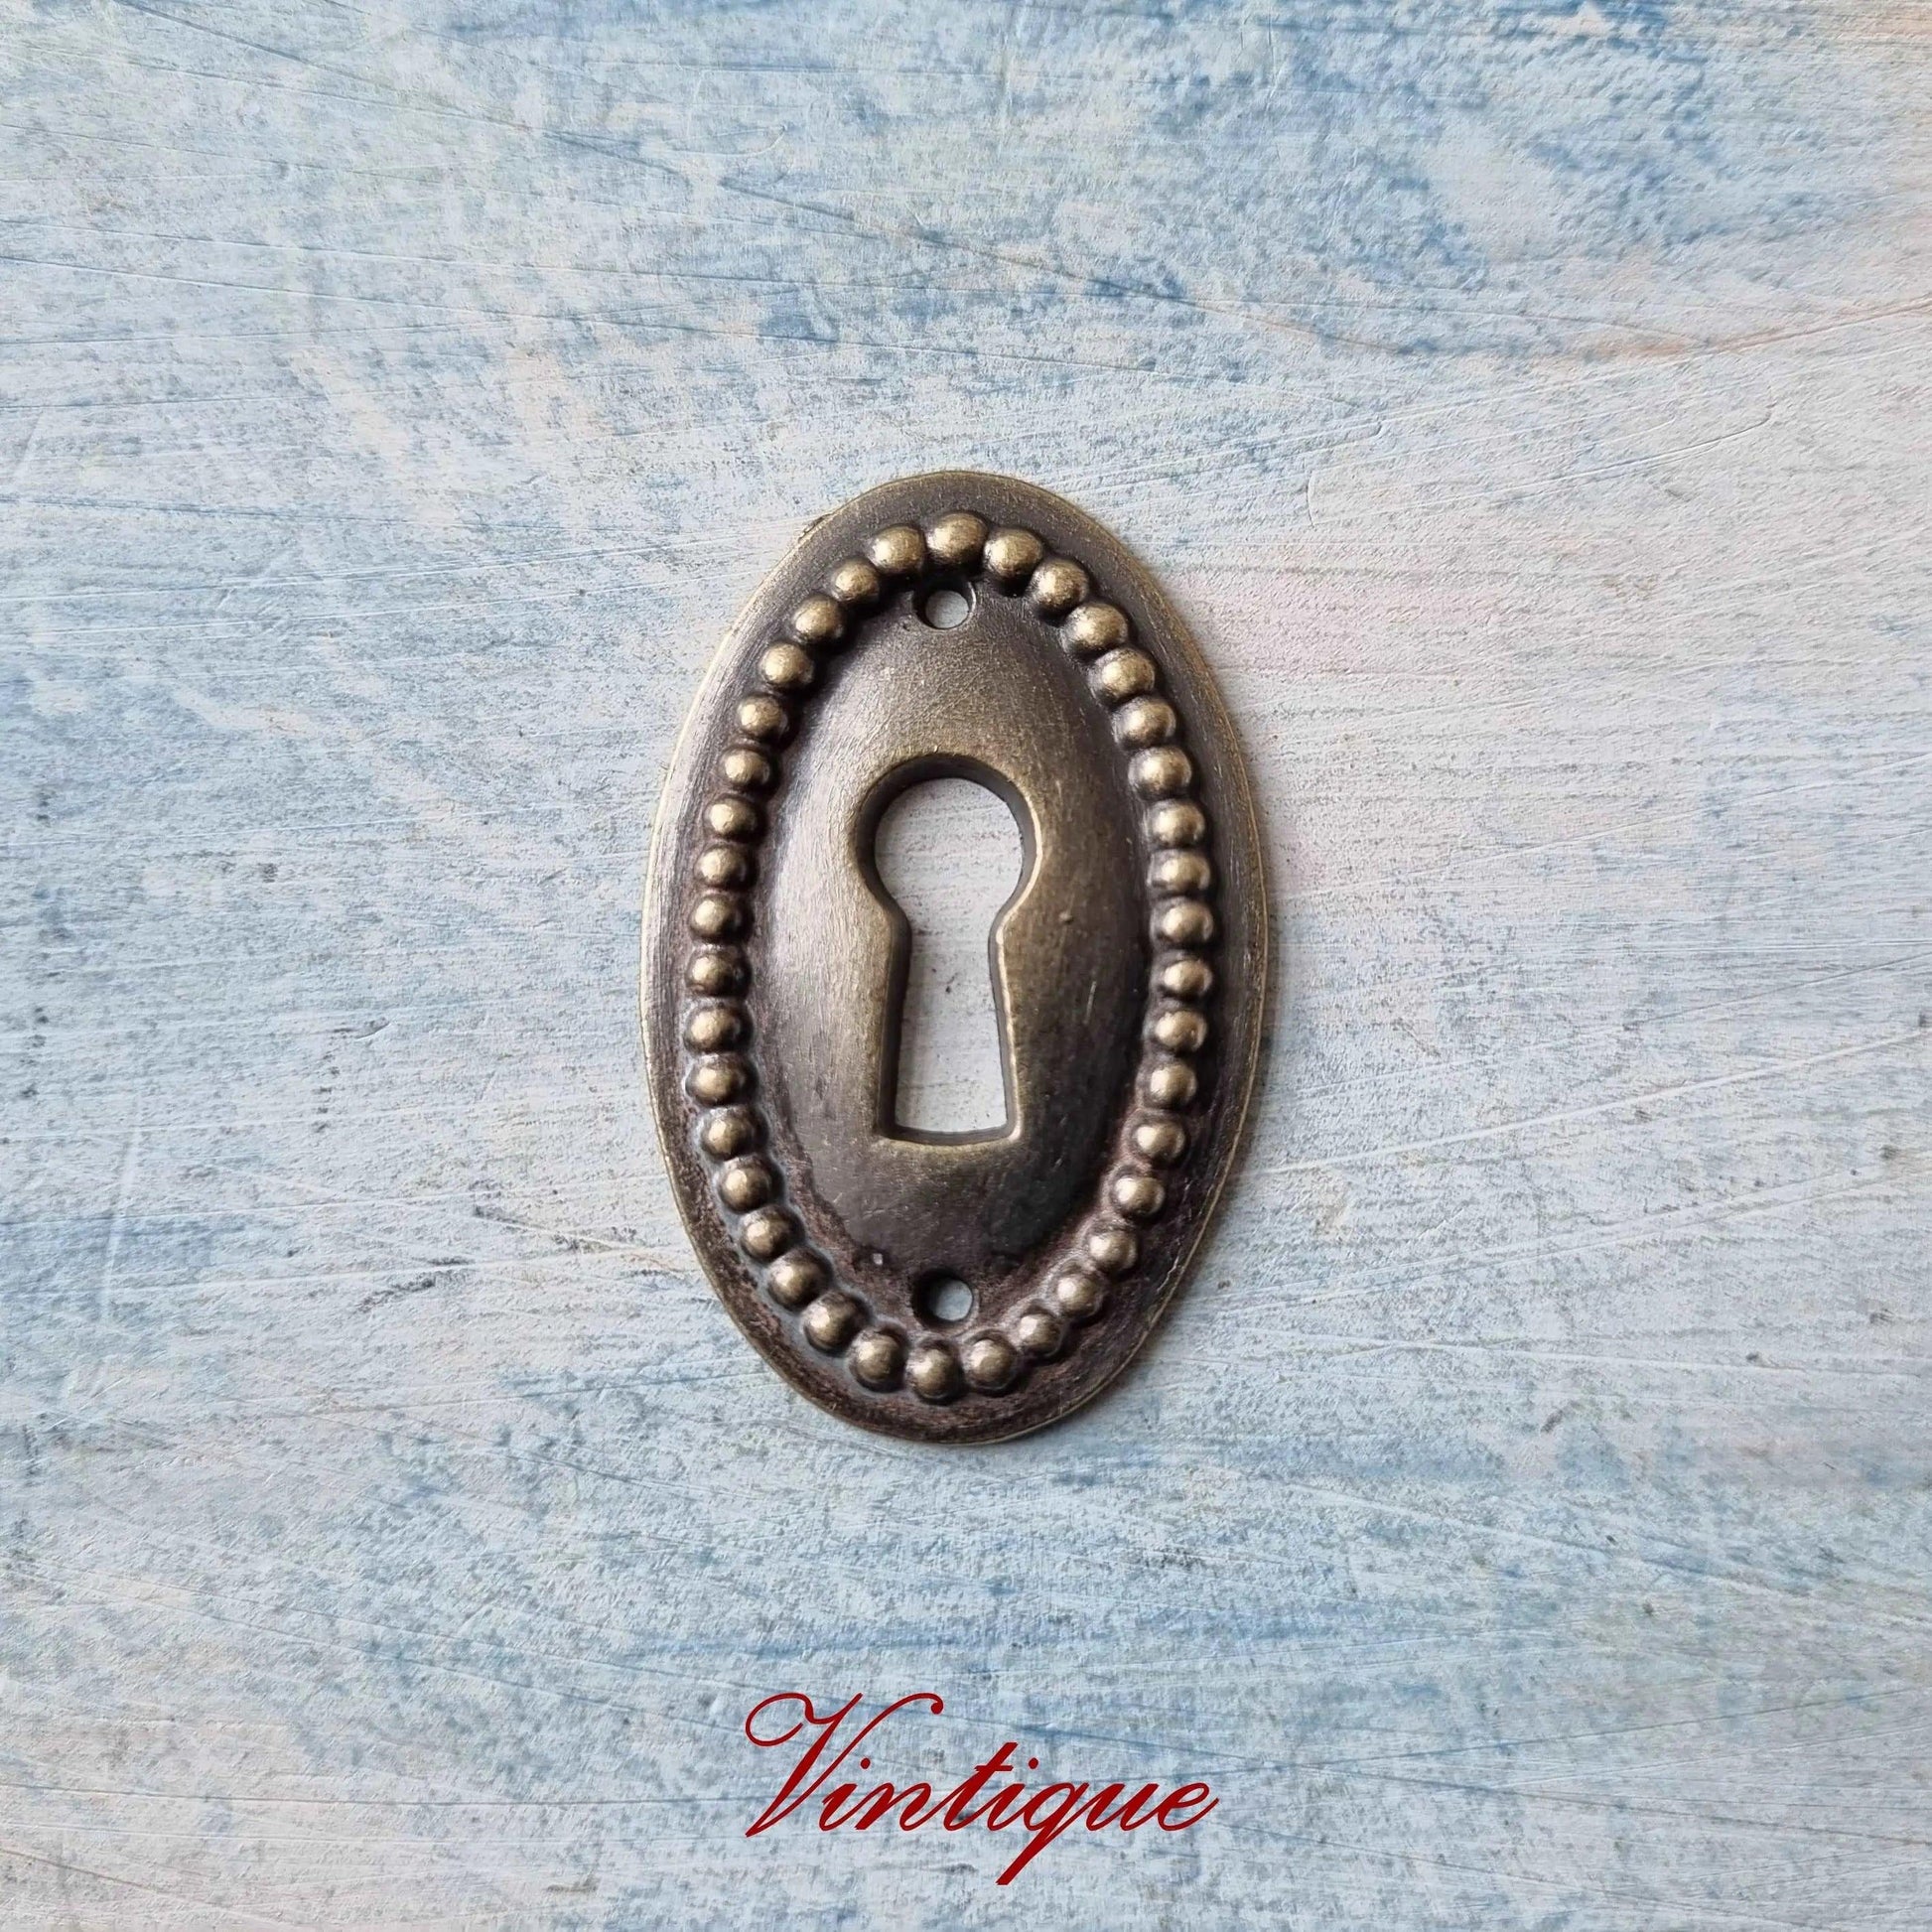 Antique etsucon bronze keyhole cover 38mm x 25mm